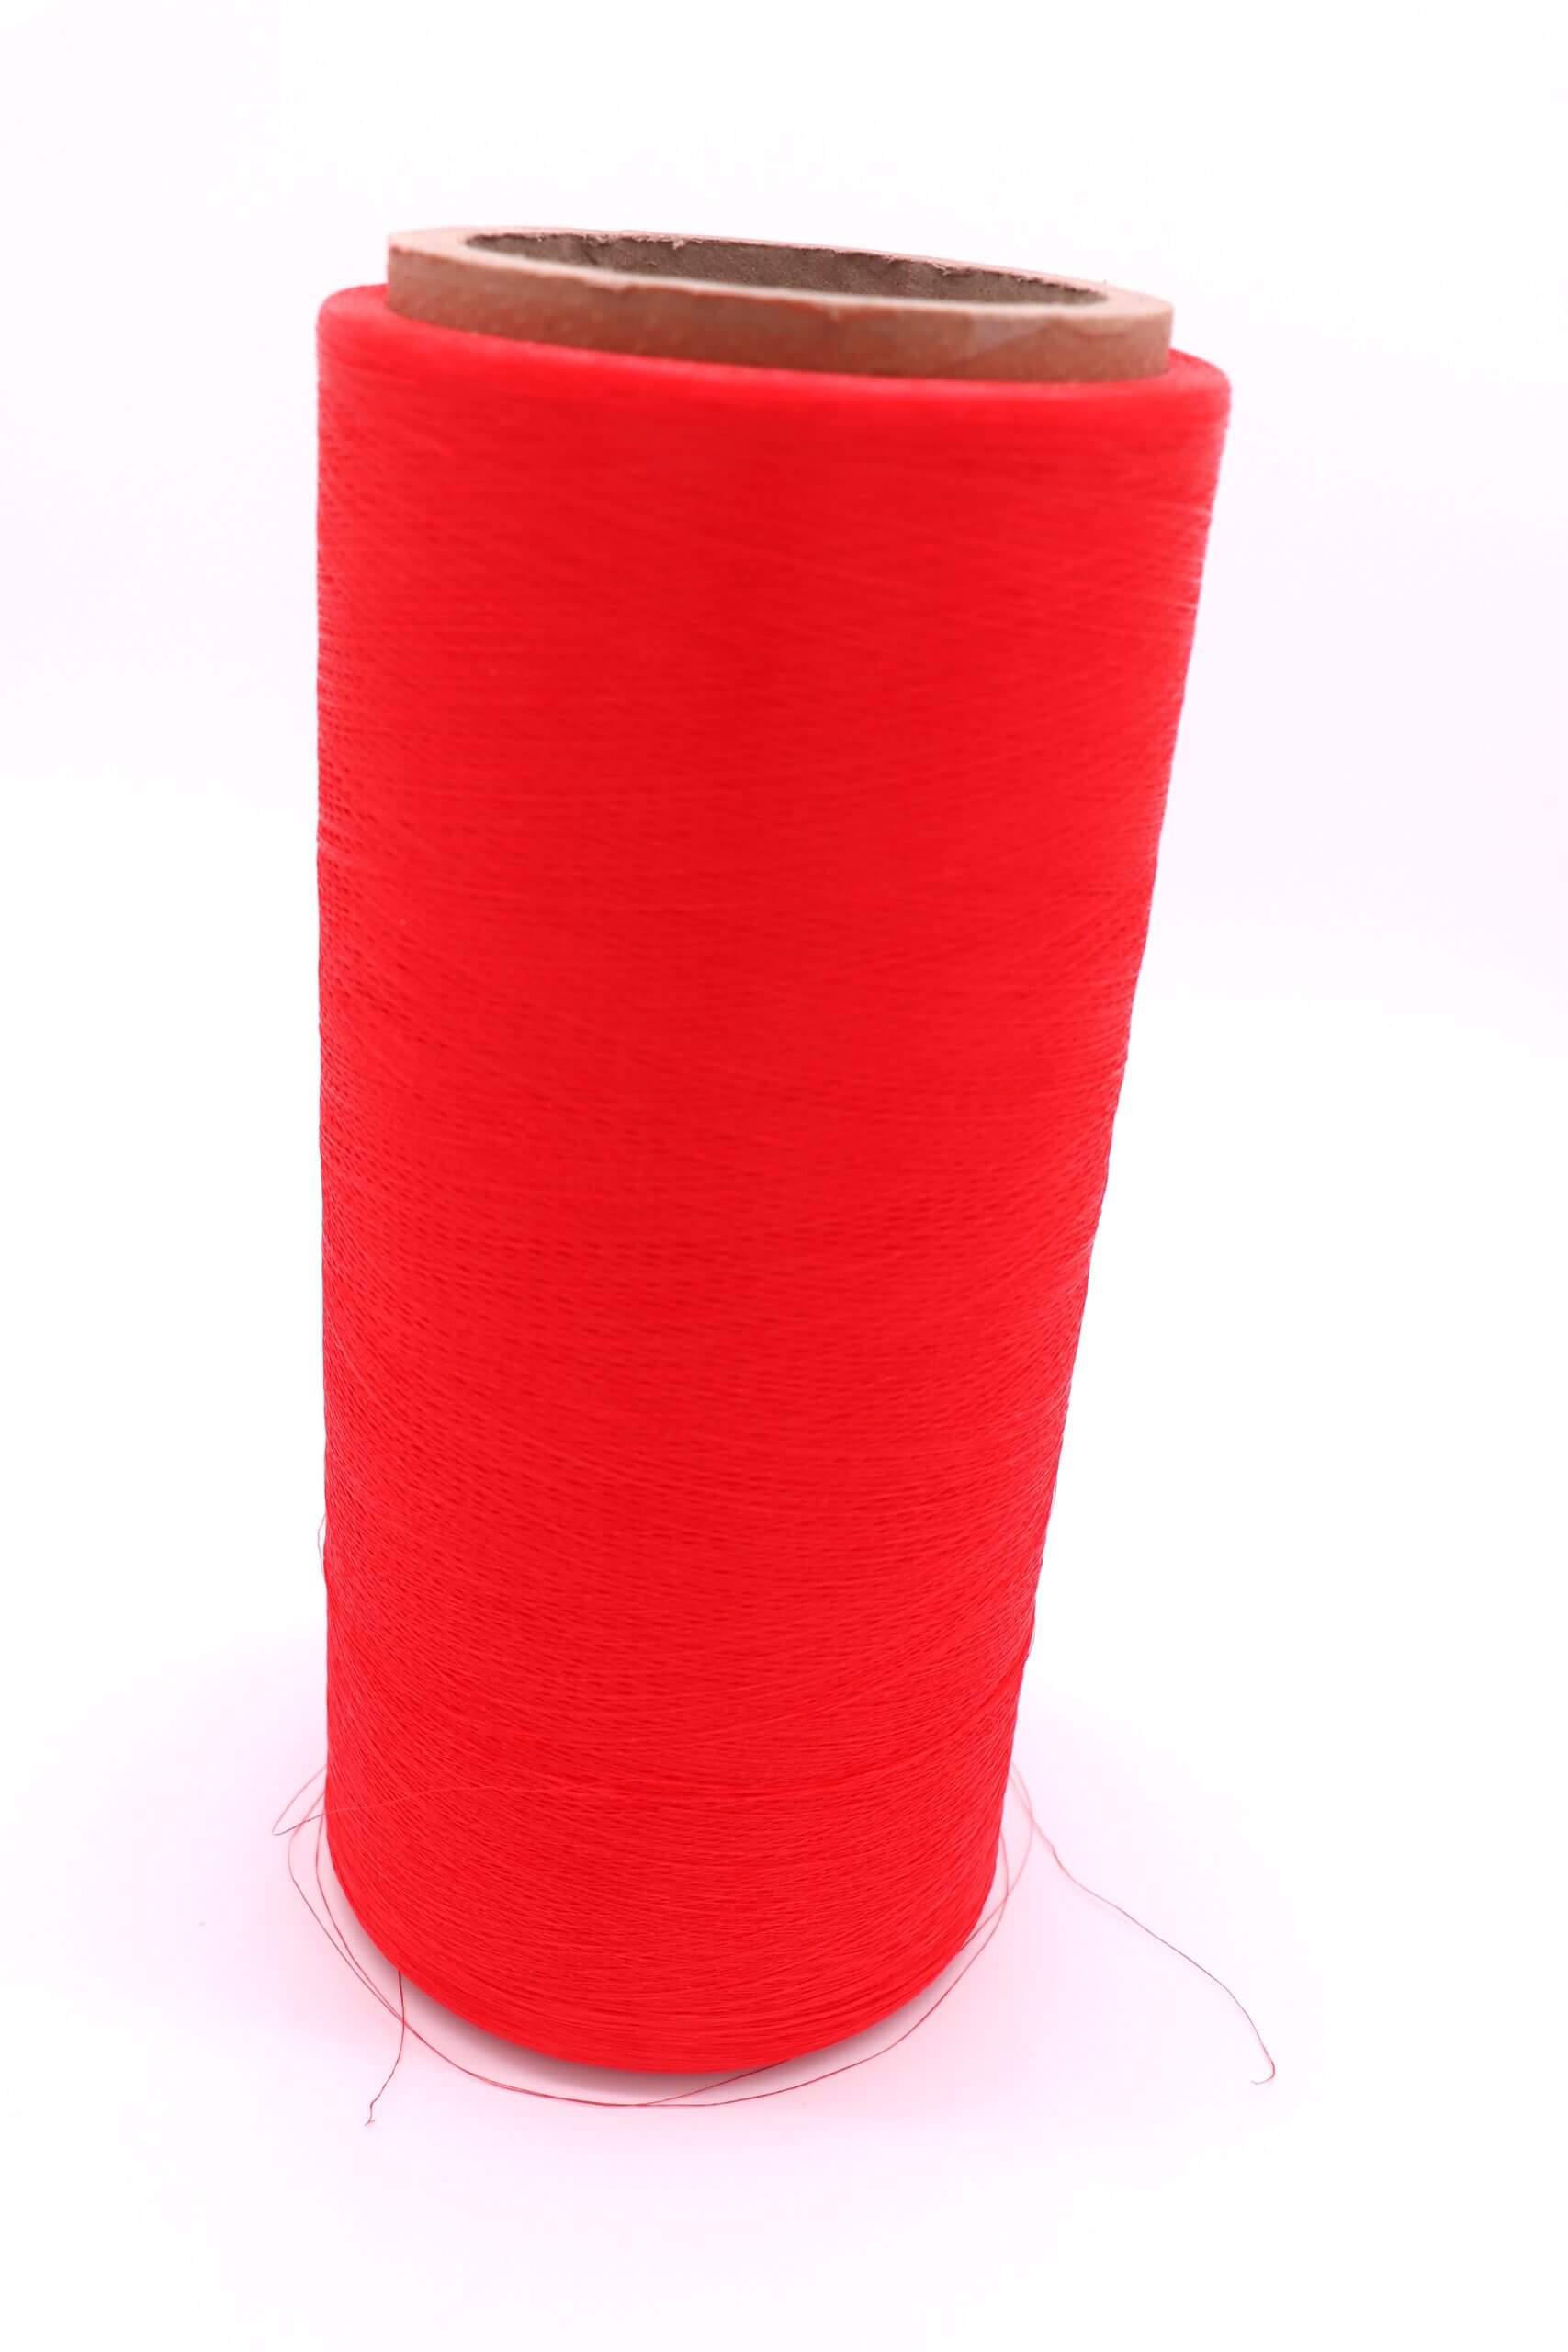 Tpu Coated Yarn Manufacturer
